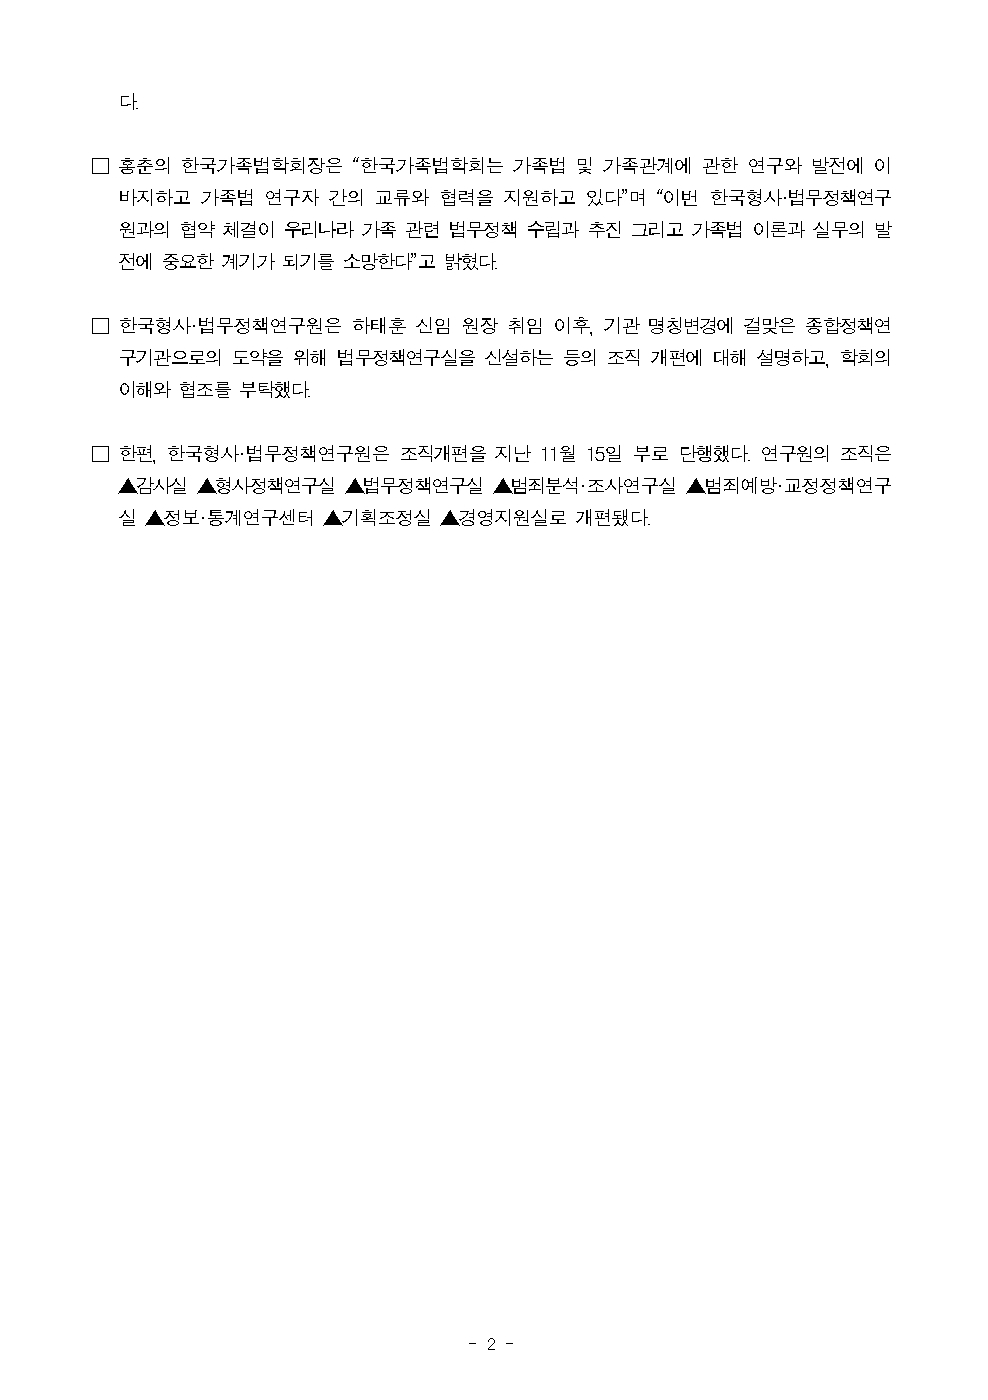 한국형사·법무정책연구원-한국가족법학회 업무협약(MOU) 체결 : 자세한 내용은 하단 pdf파일 참조